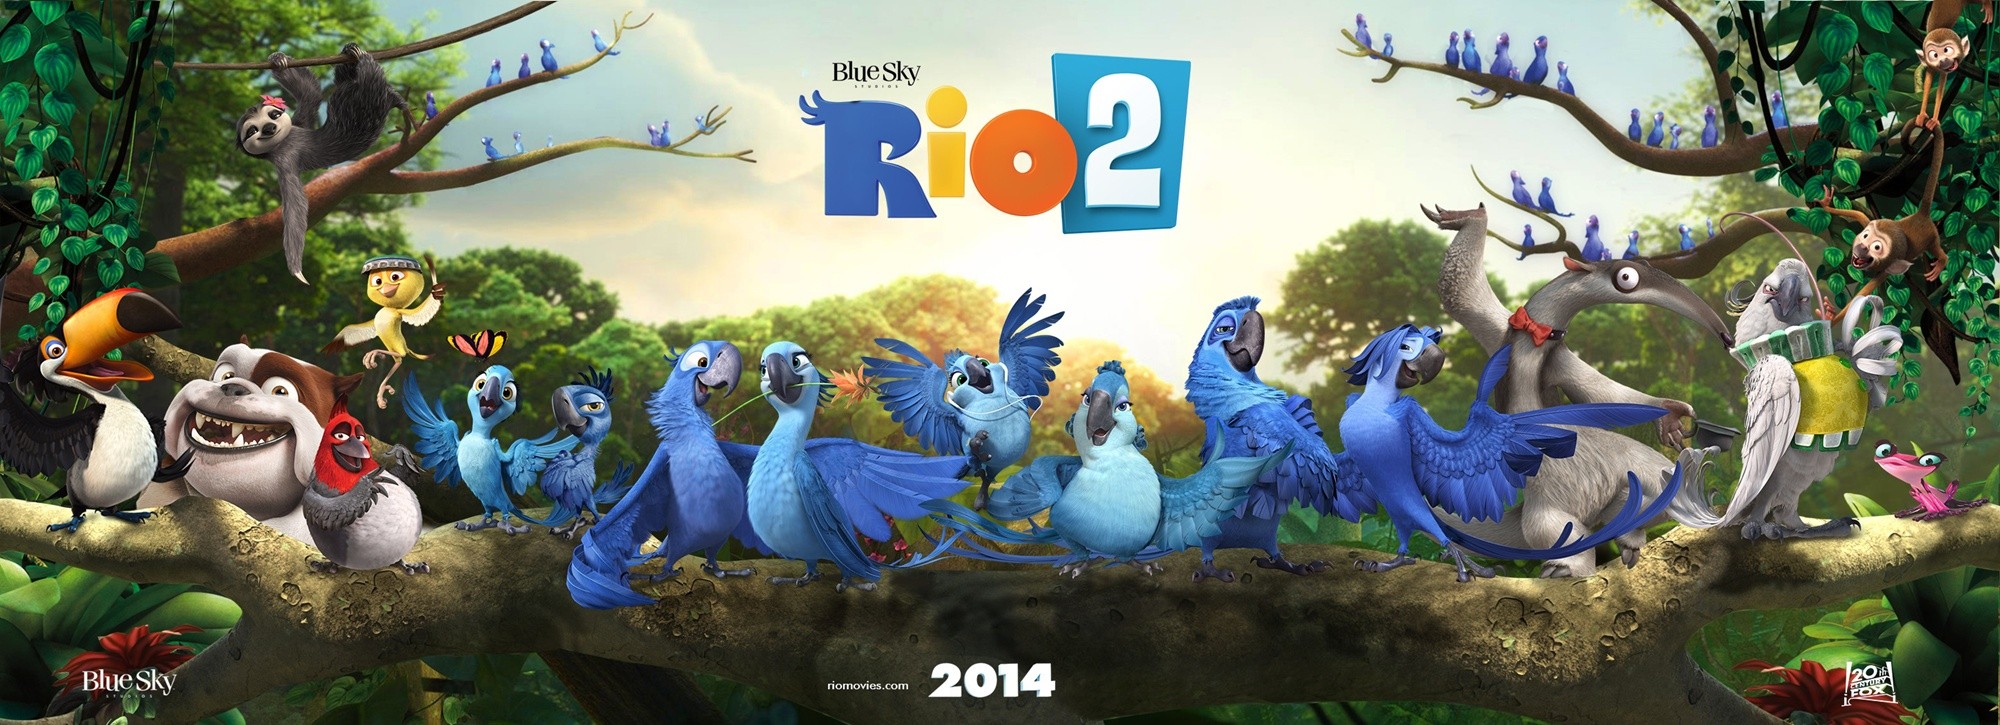 rio 2 teaser poster